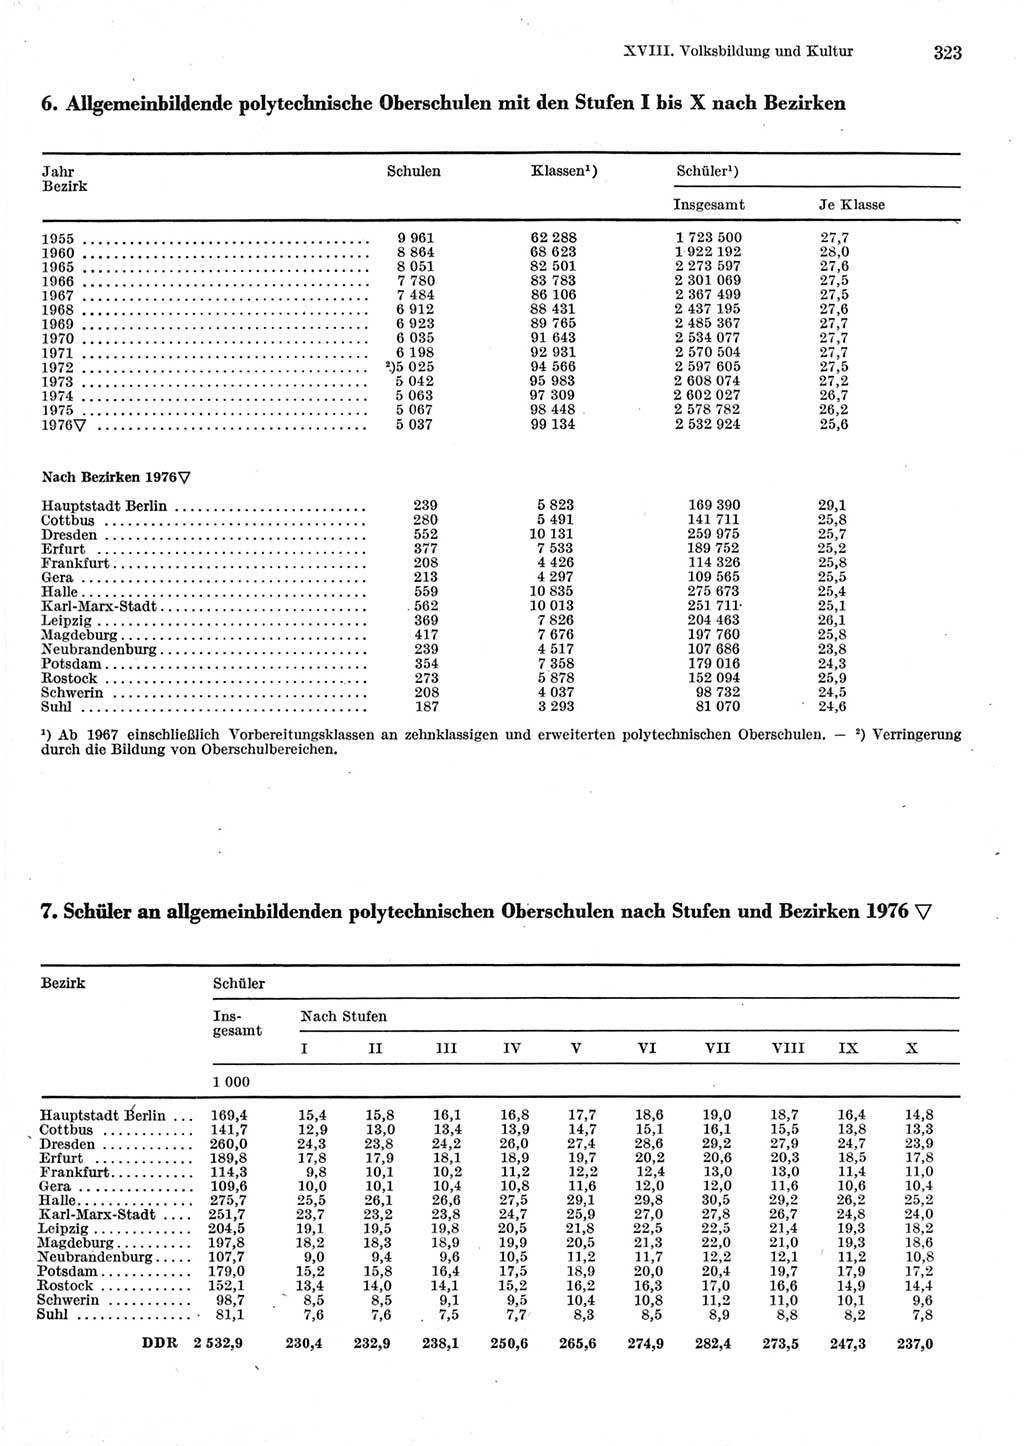 Statistisches Jahrbuch der Deutschen Demokratischen Republik (DDR) 1977, Seite 323 (Stat. Jb. DDR 1977, S. 323)